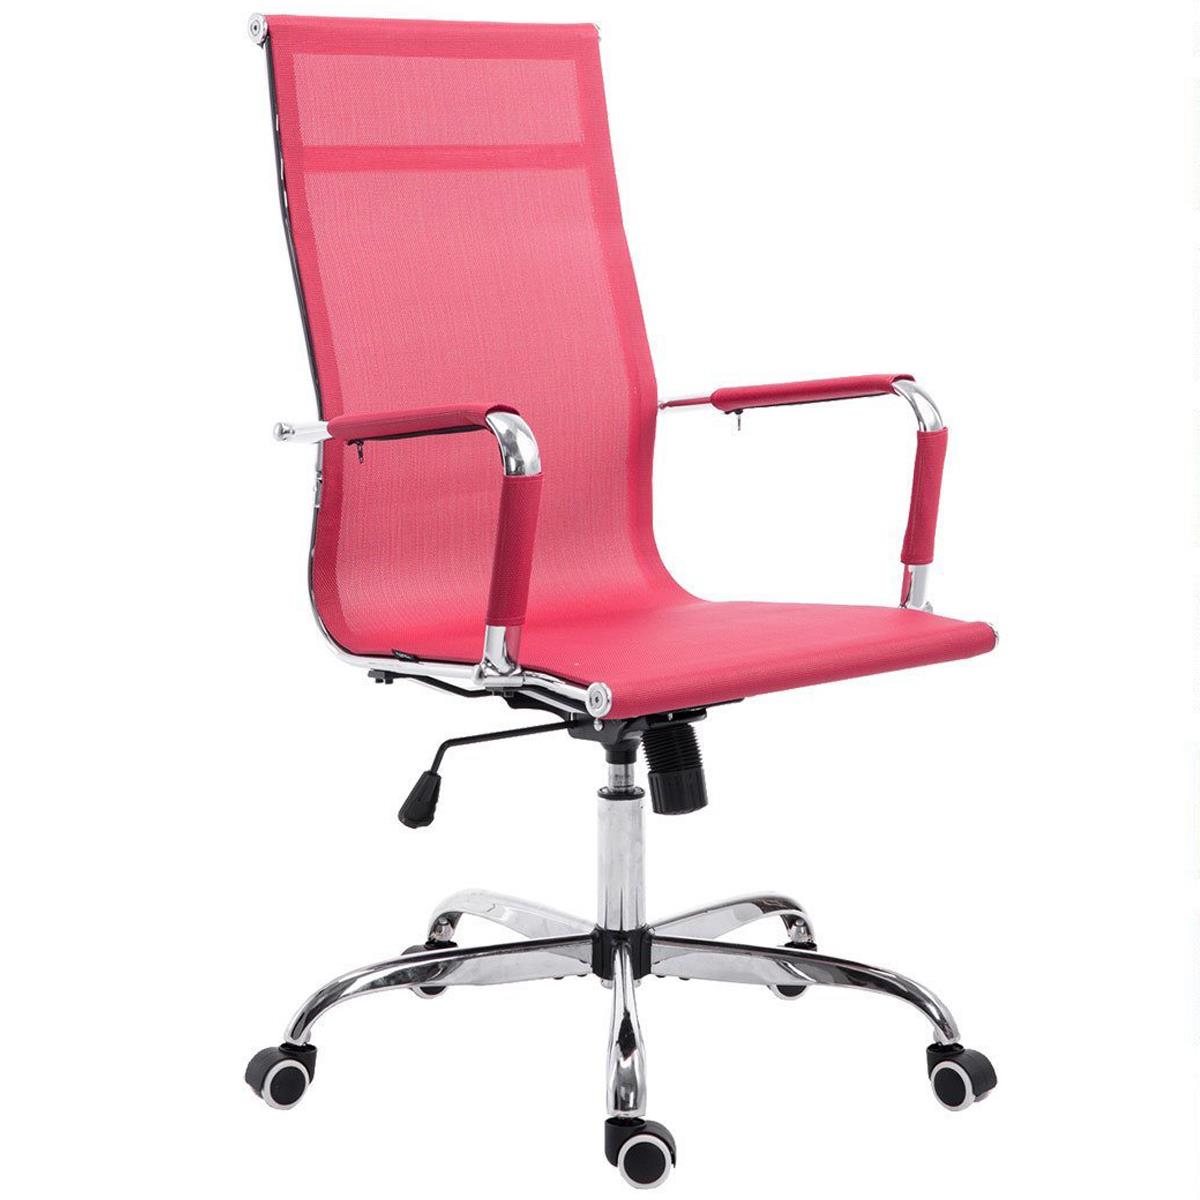 Chaise de bureau ITALIE, Structure Métallique, Magnifique Design en Maille Respirable, Rouge